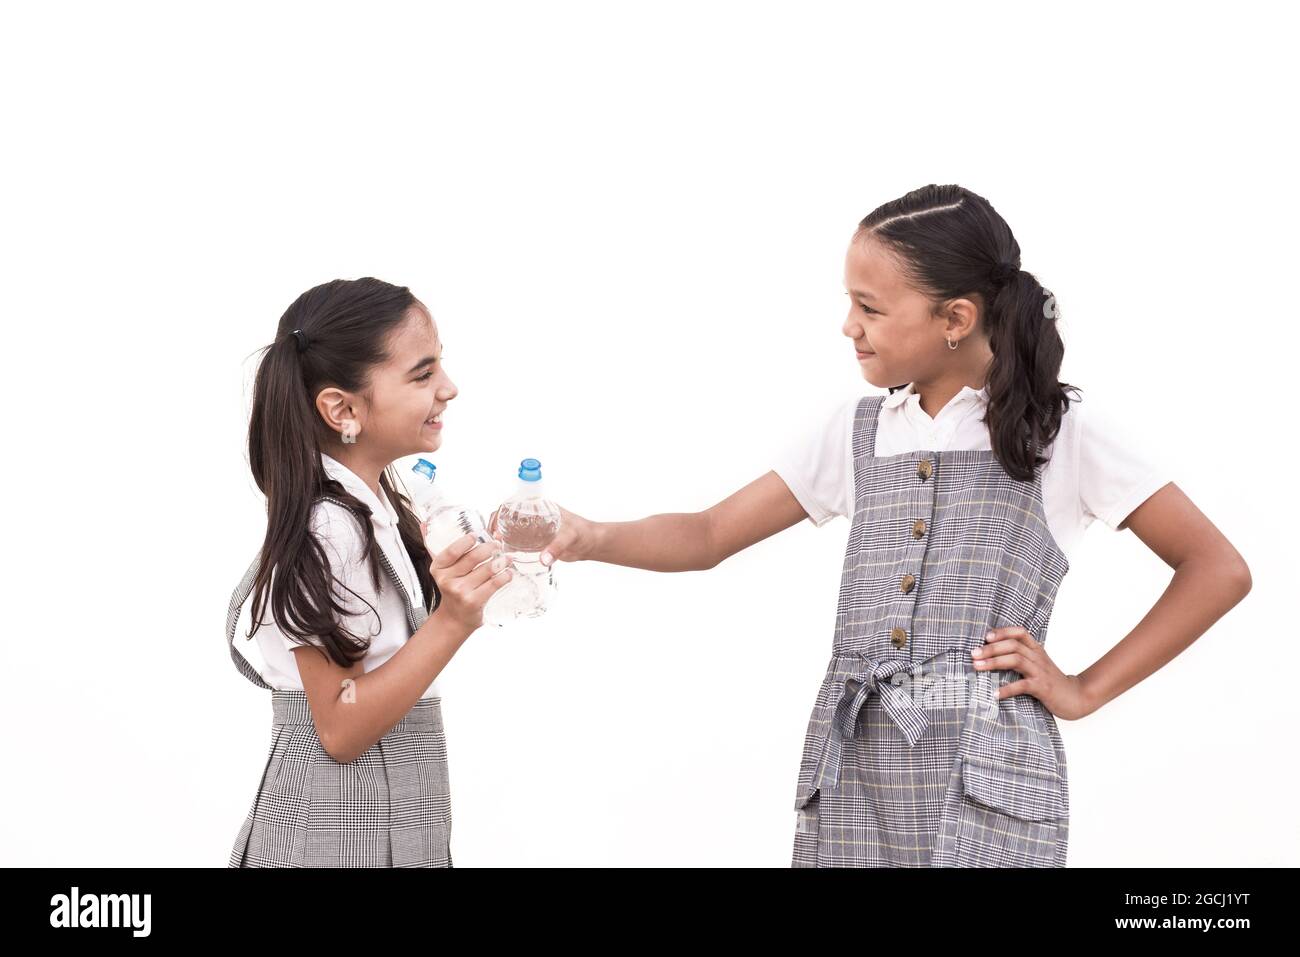 Zwei Schülerinnen in Uniform rösten mit Flaschen isoliert auf weißem Hintergrund Stockfoto